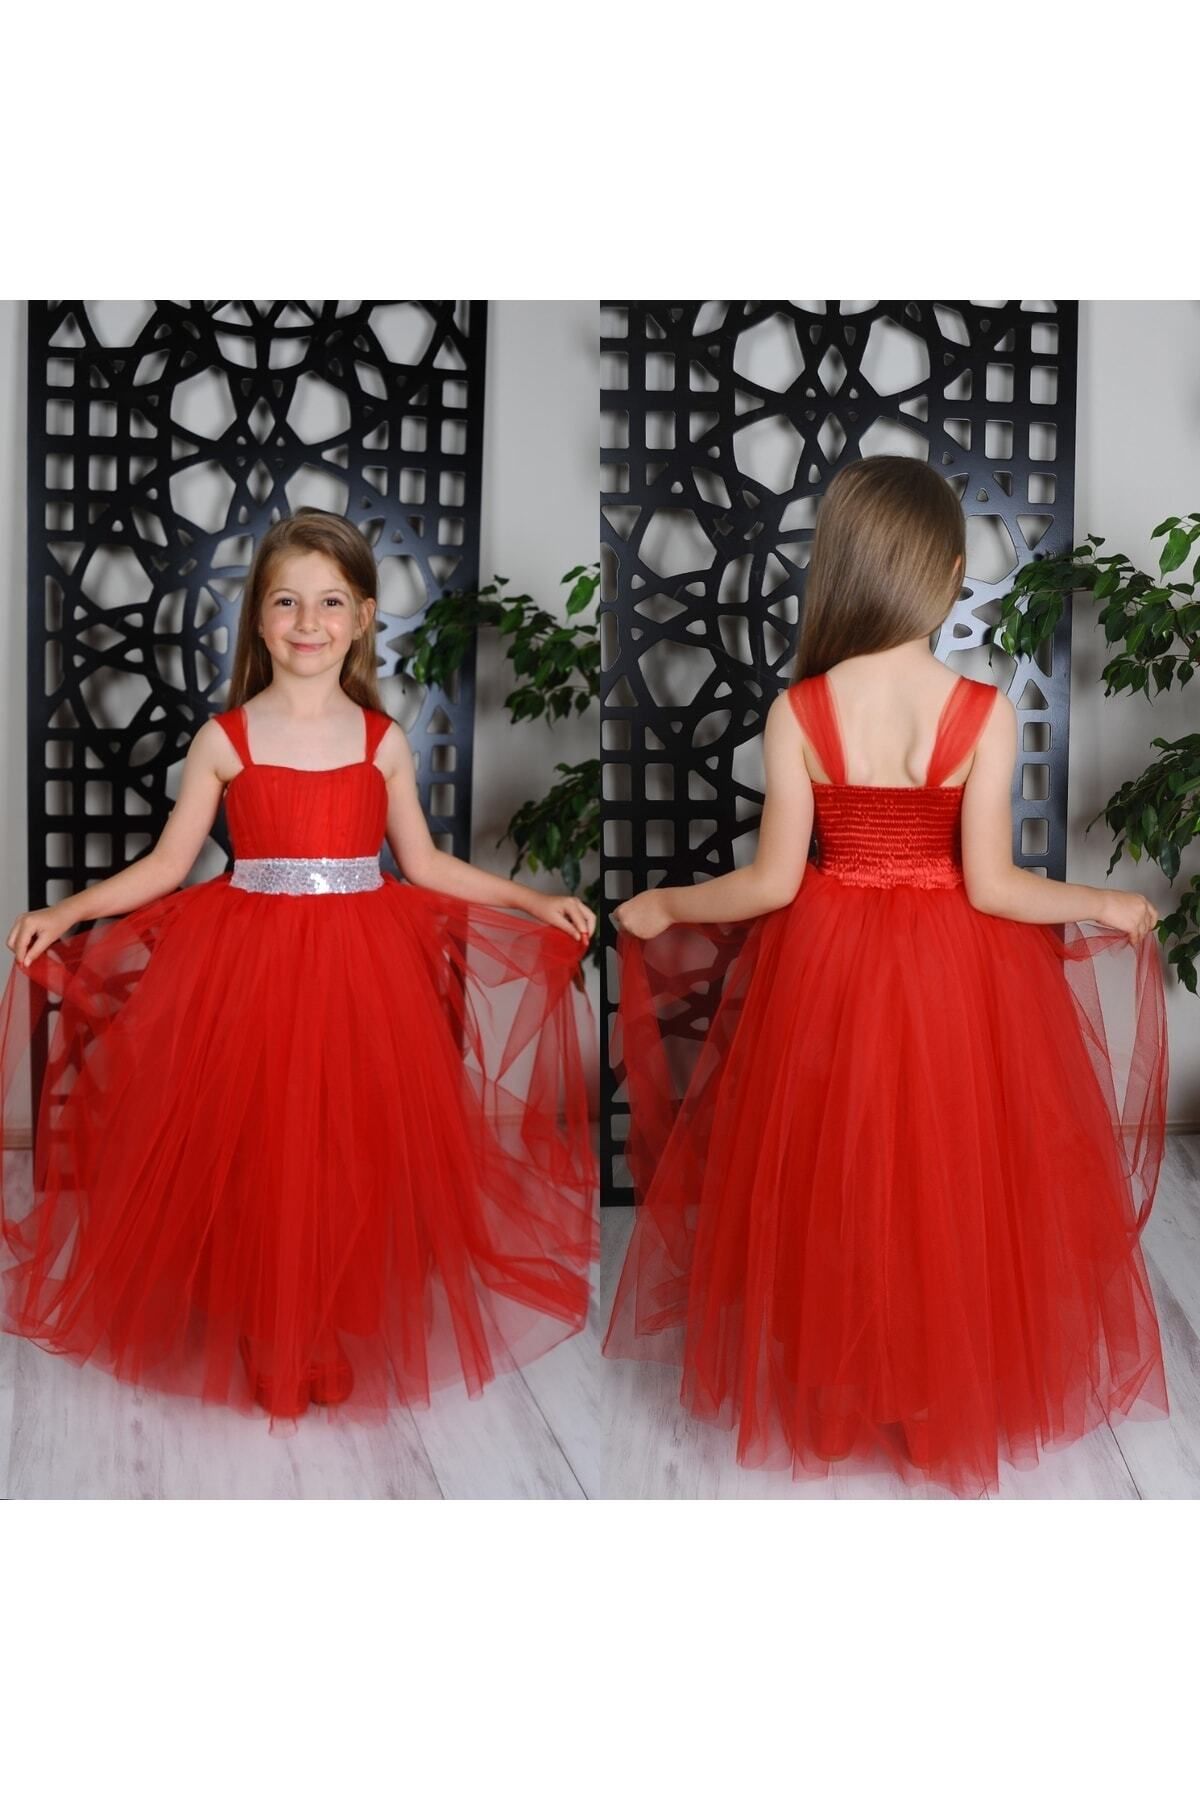 KT PERA BABY Kız Çocuk Uzun Pamukkoza Kırmızı Abiye Elbise